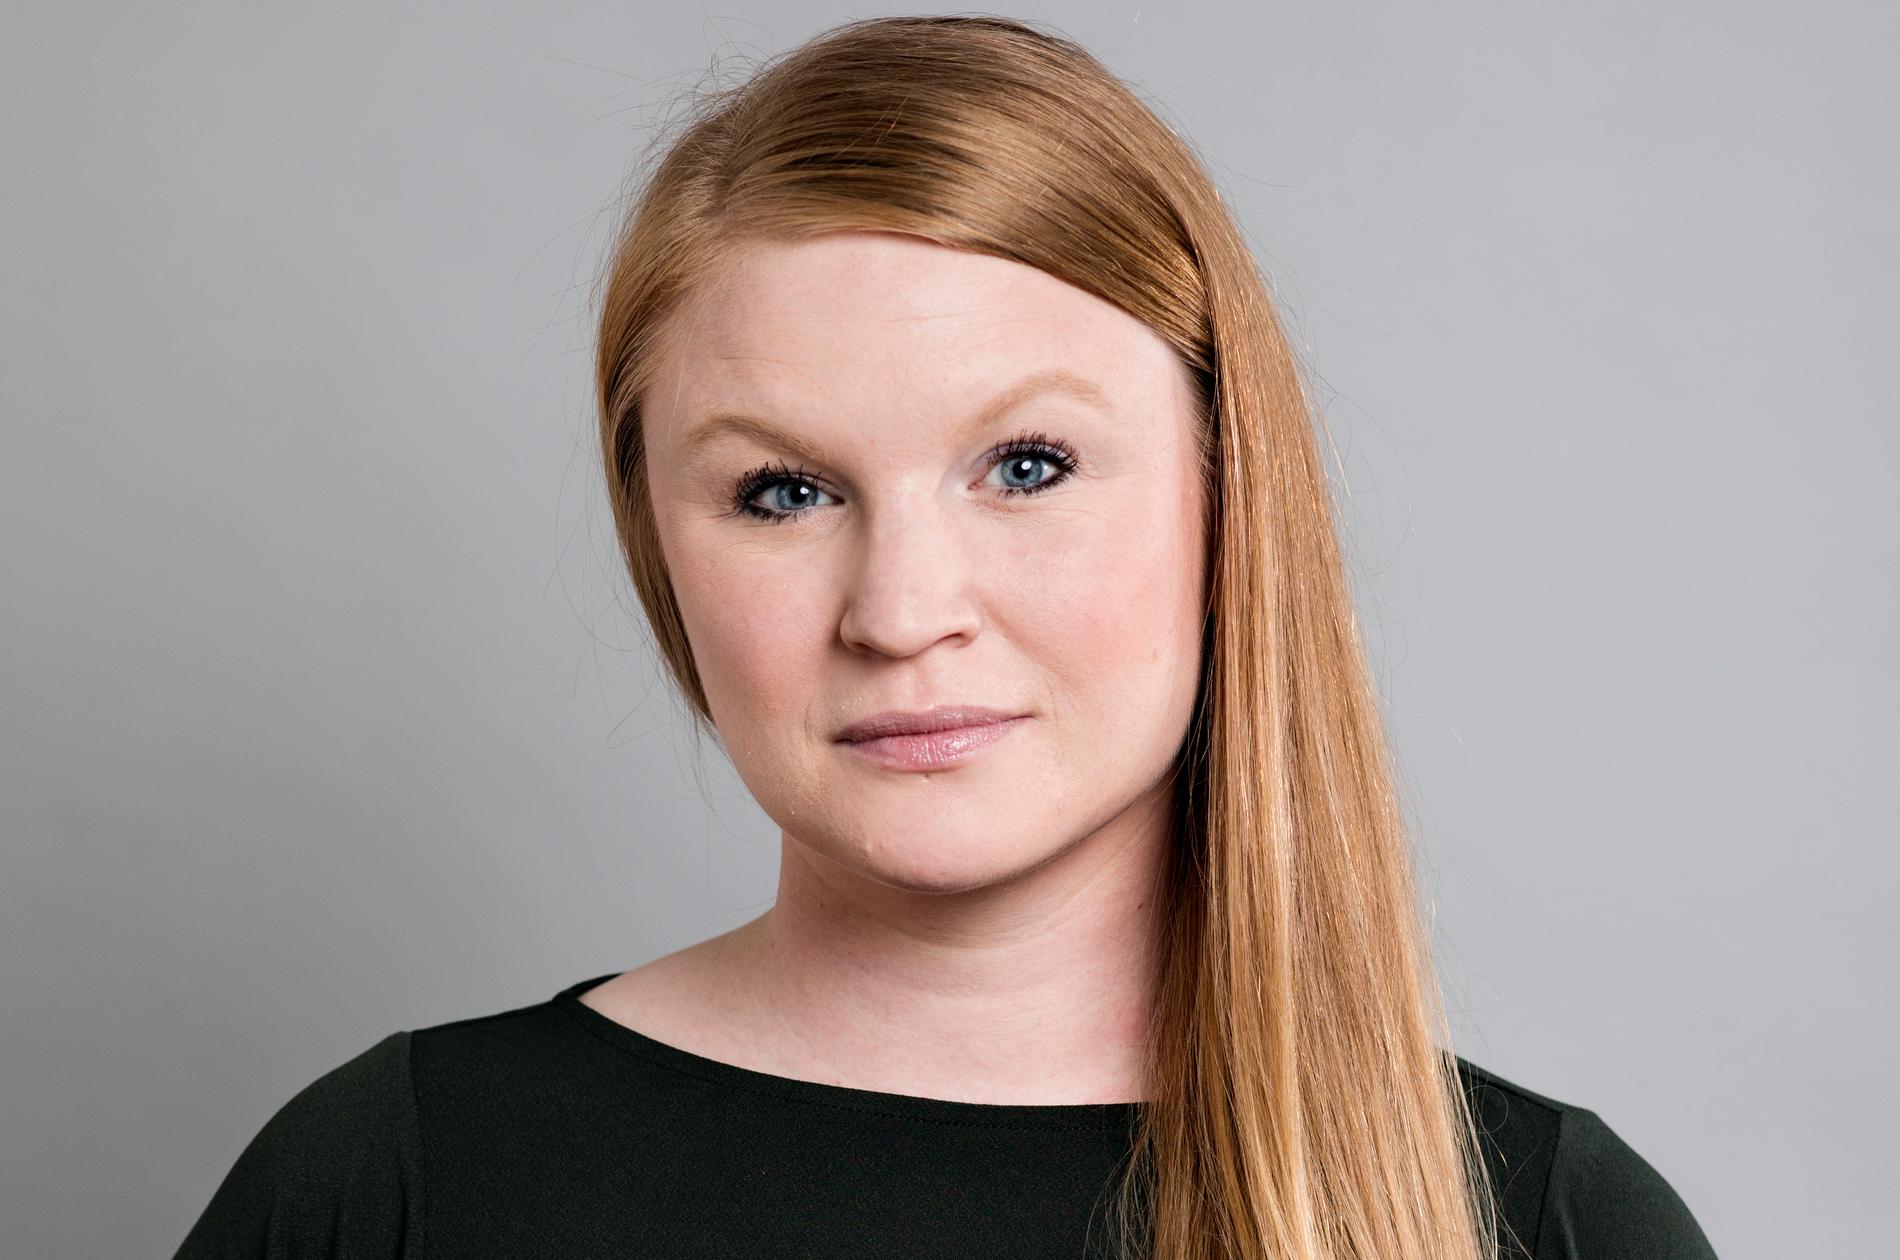 Oppositionsborgarrådet Clara Lindblom (V) 